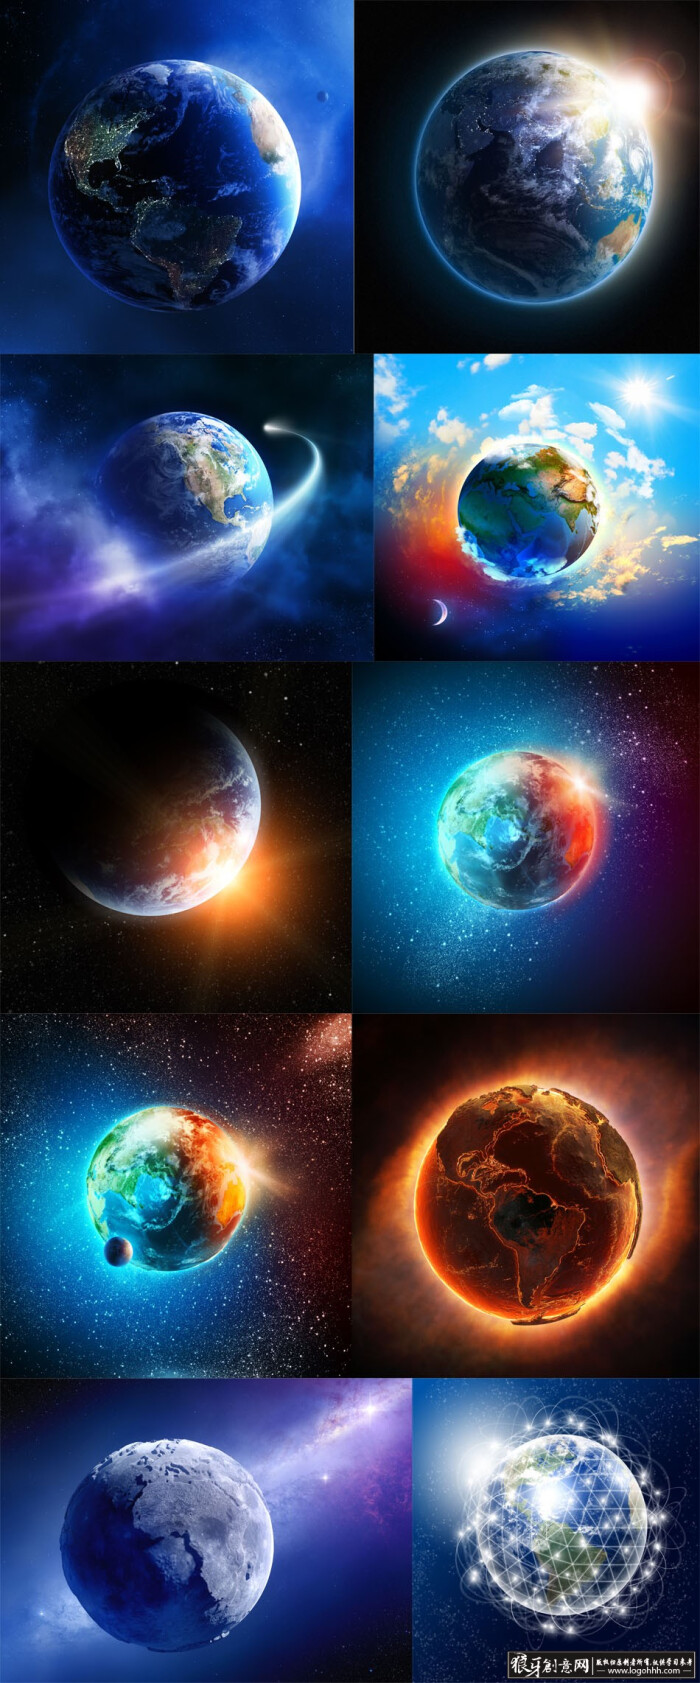 背景素材 各种太空地球高清背景图片,地球运转背景,宇宙太阳系地球